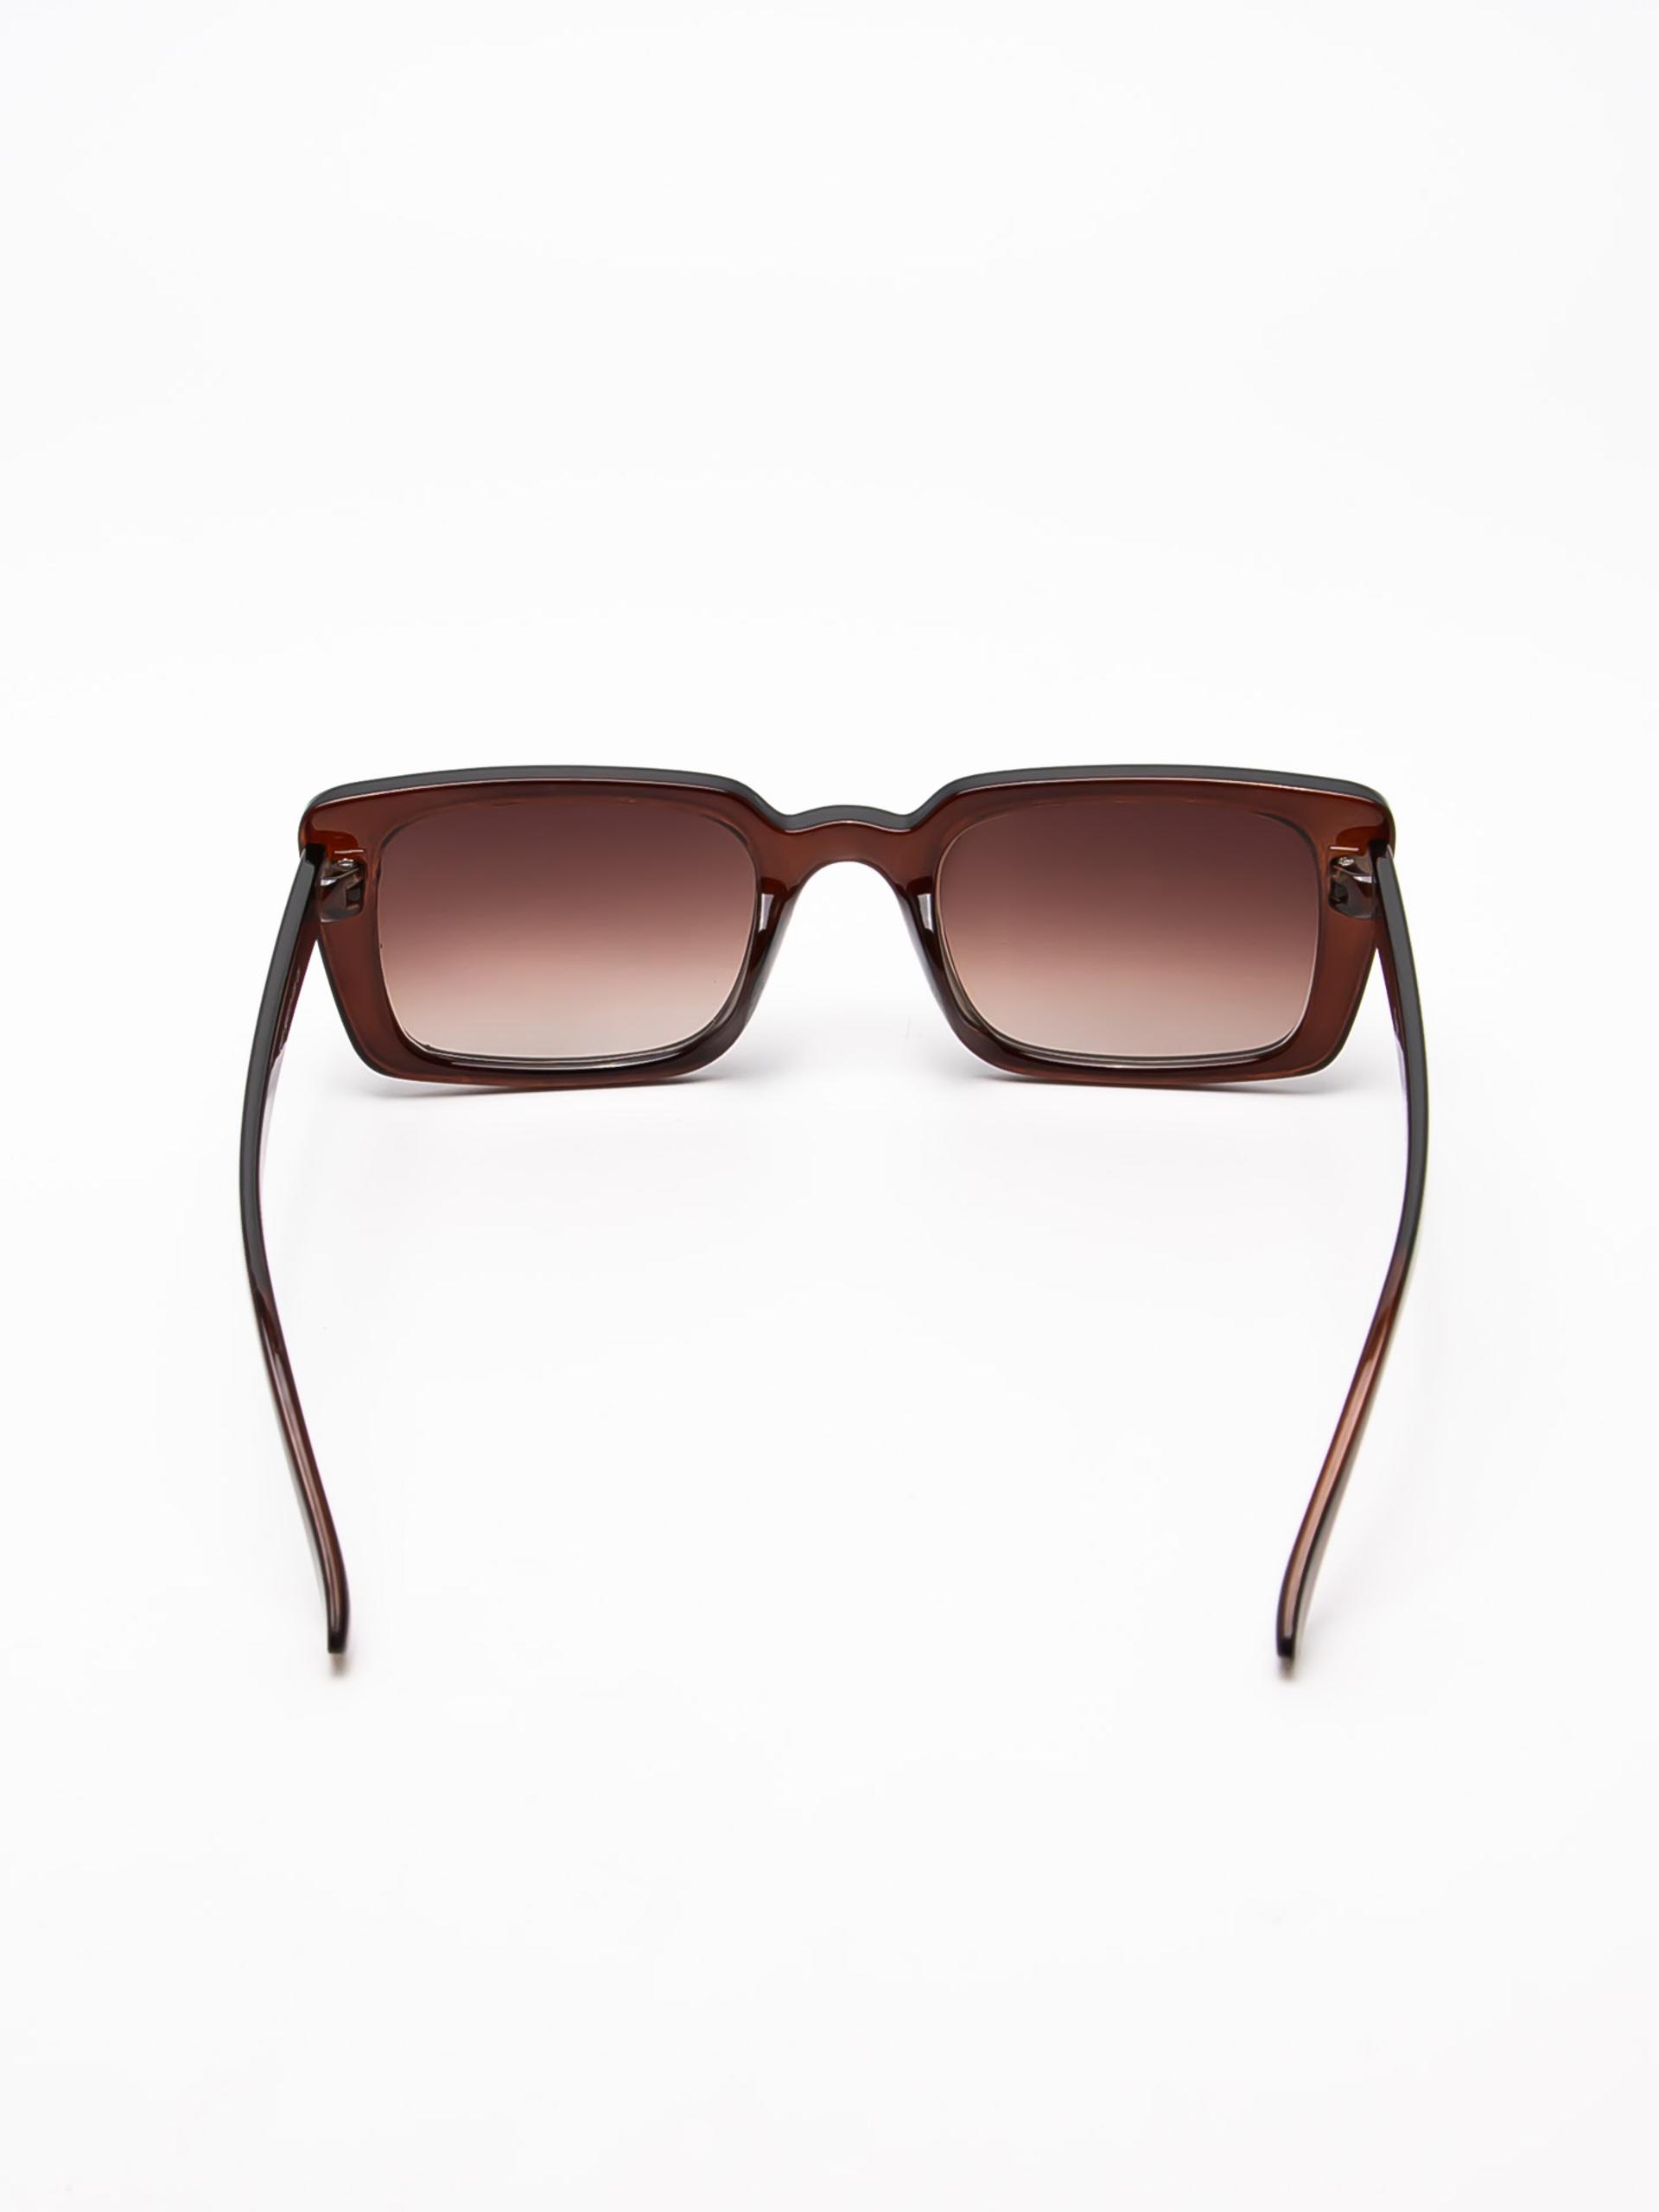 Товар - “Солнцезащитные очки женские”